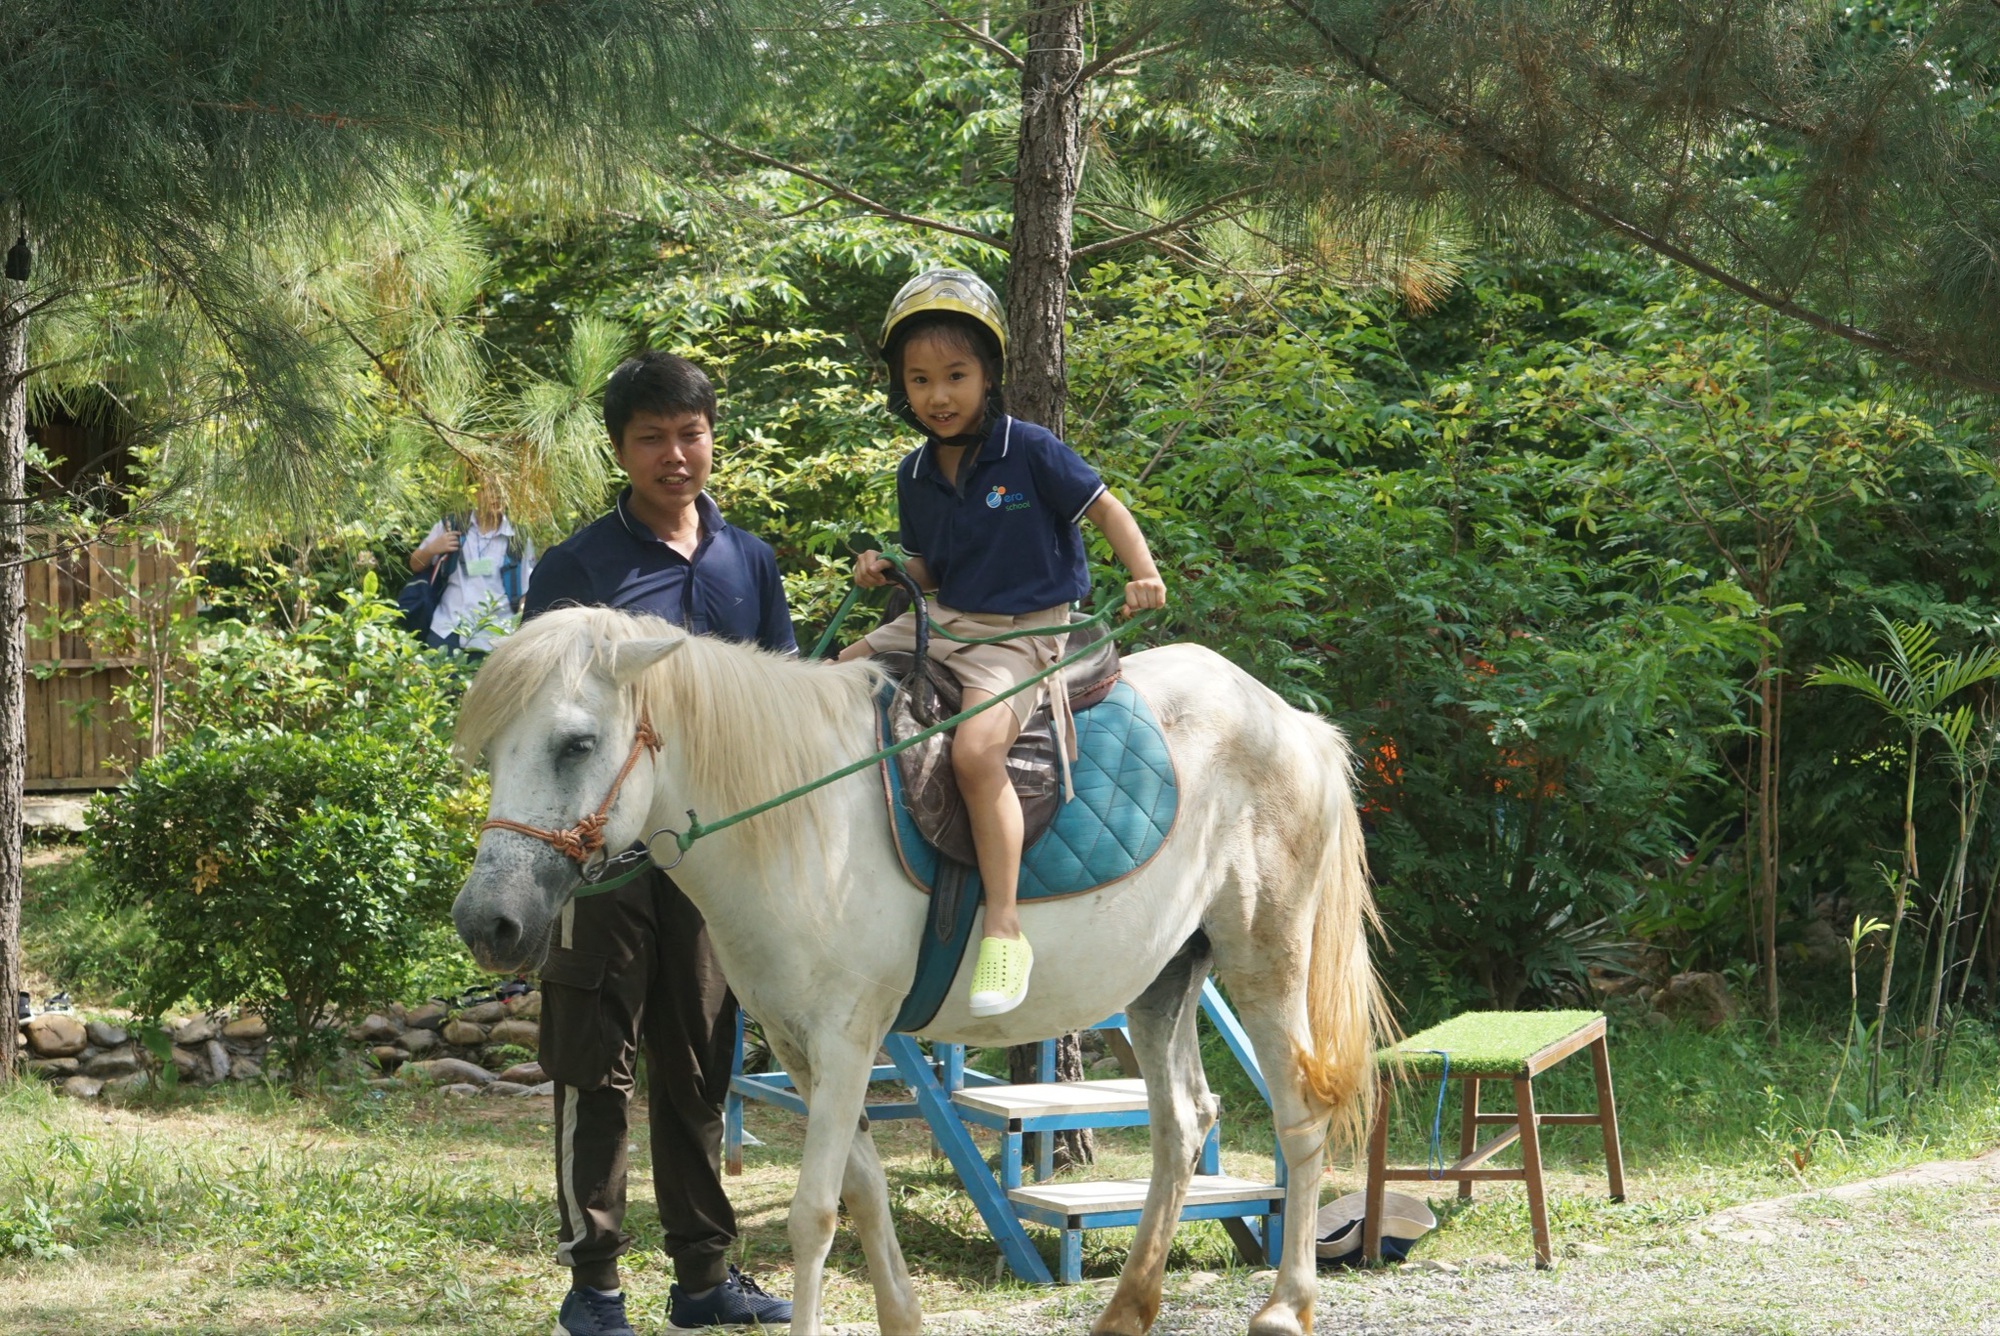 Tự nhận là “bản giao hưởng hạnh phúc”, ngôi trường liên cấp rộng 20.000m2 này dạy học sinh tự làm chủ cuộc sống bằng việc cưỡi ngựa, trồng rau, bắt cá suối - Ảnh 1.